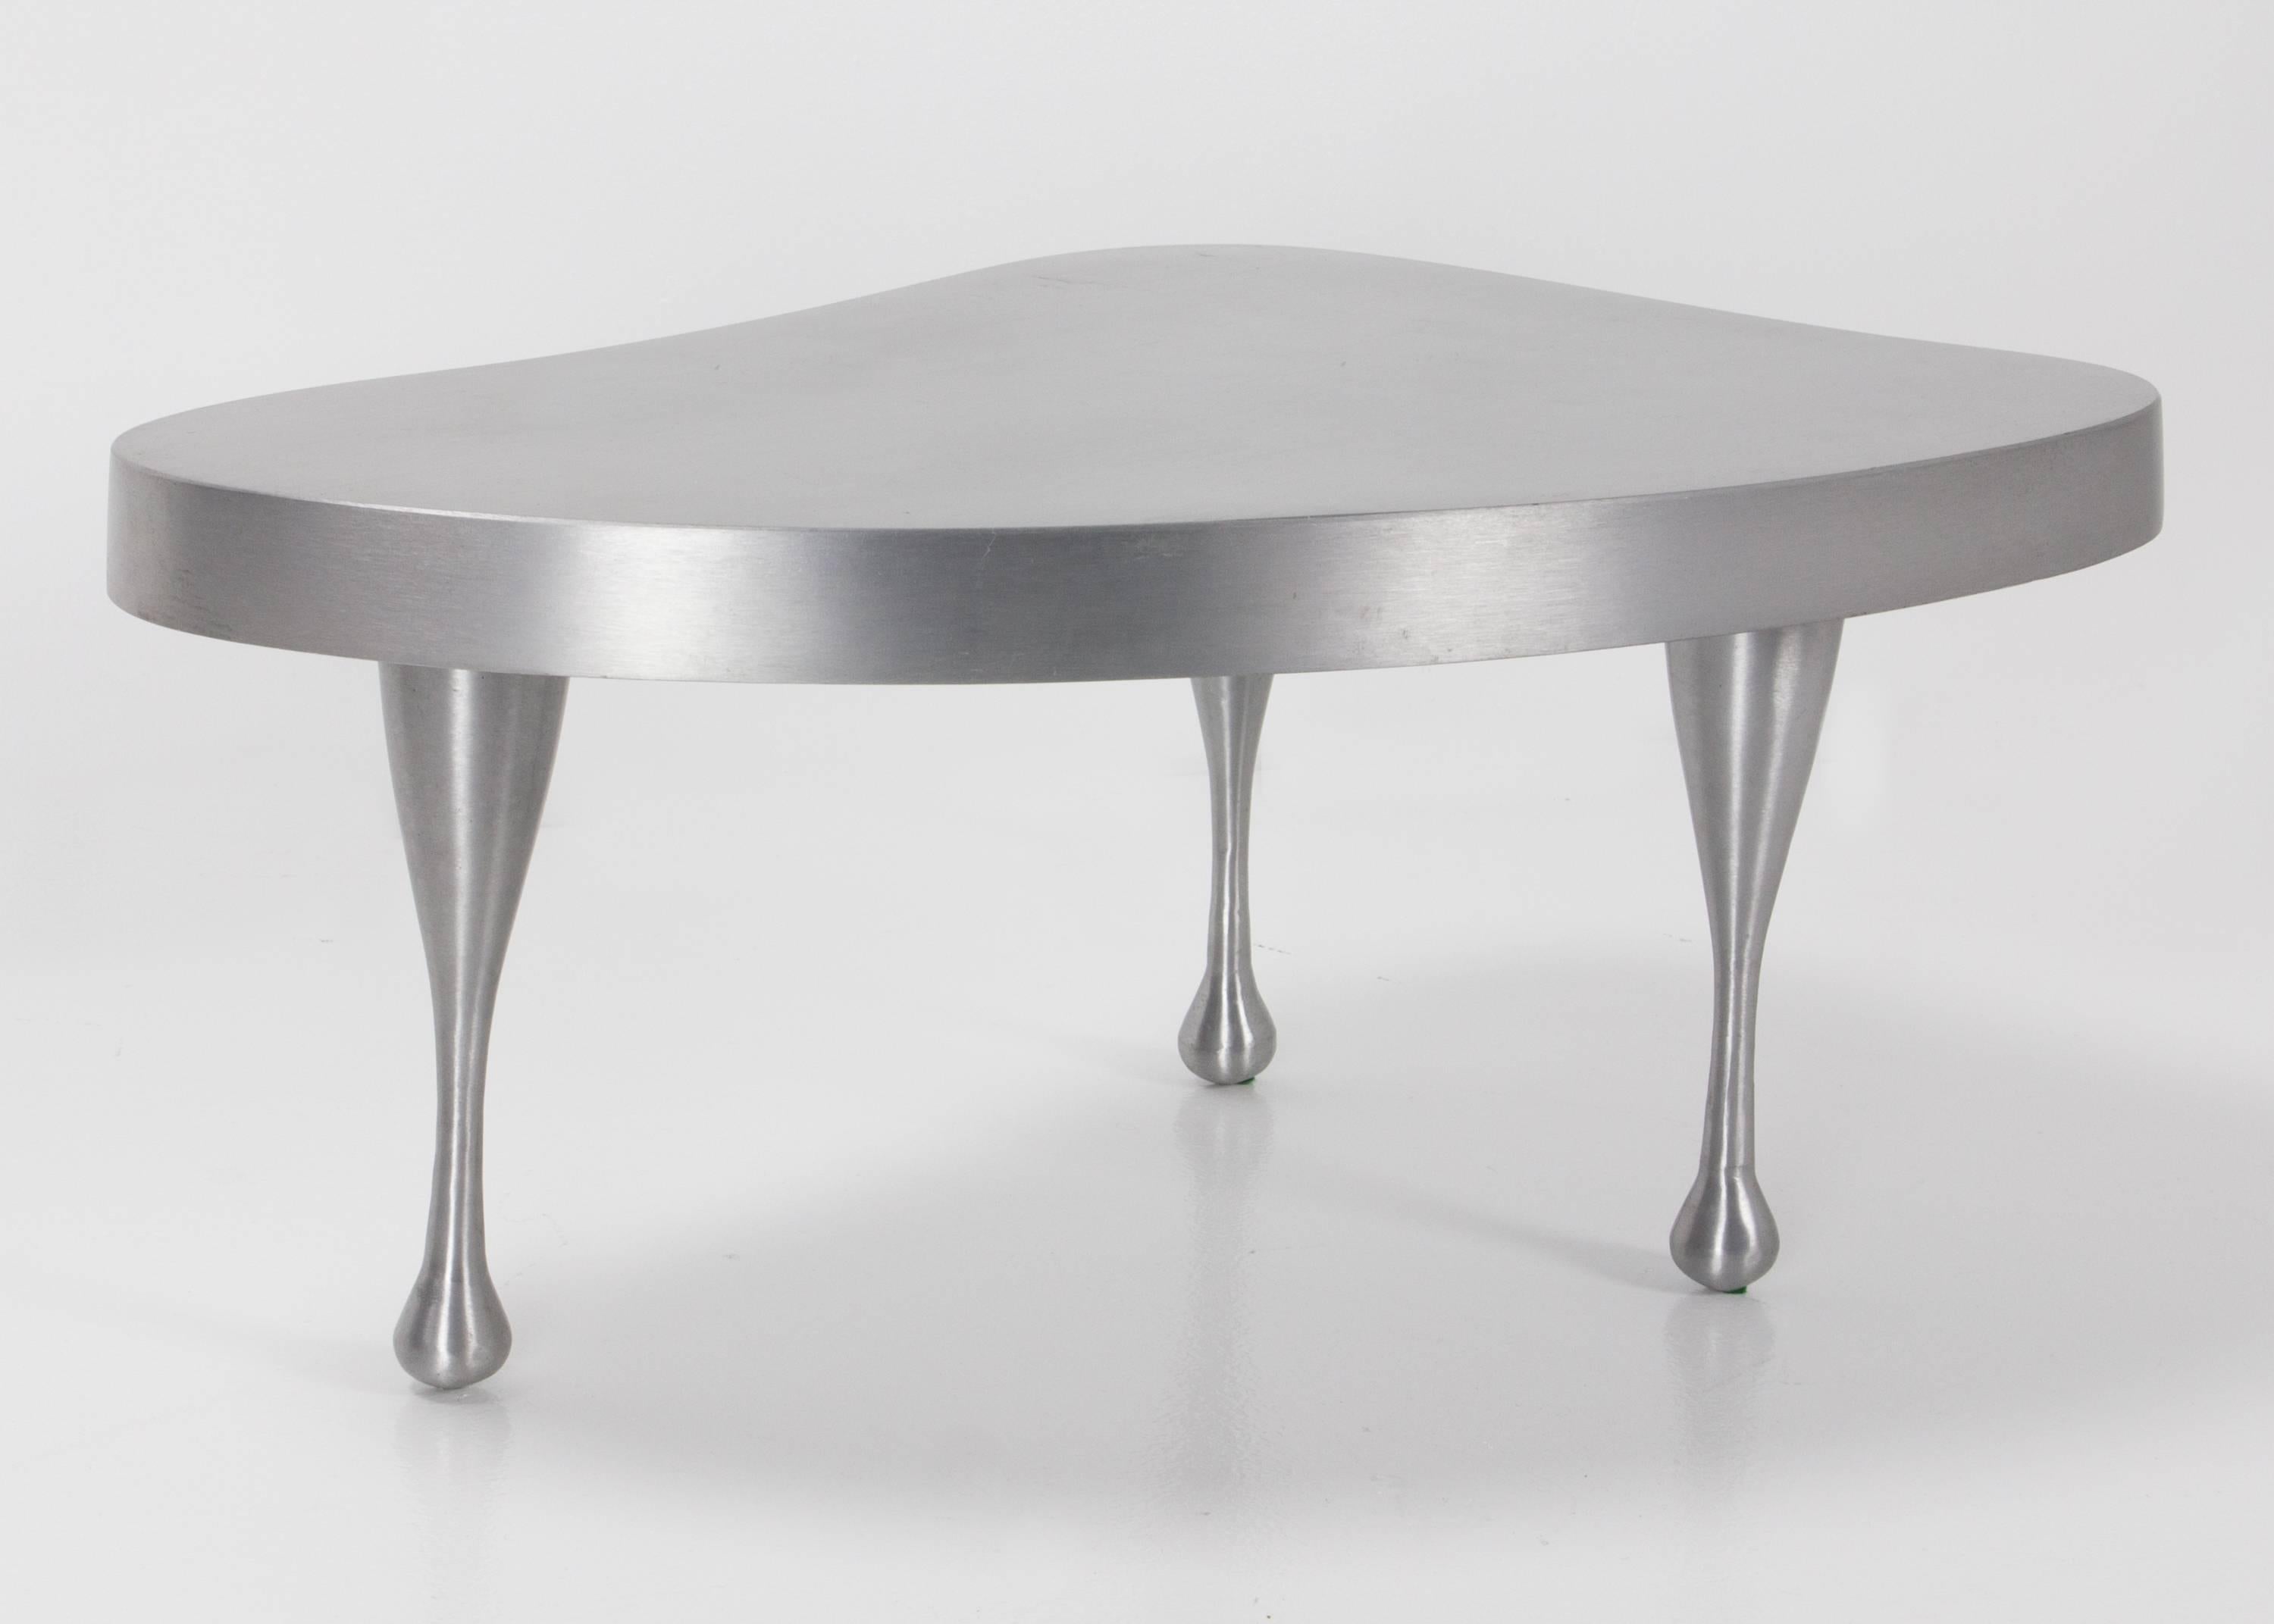 cast aluminium table